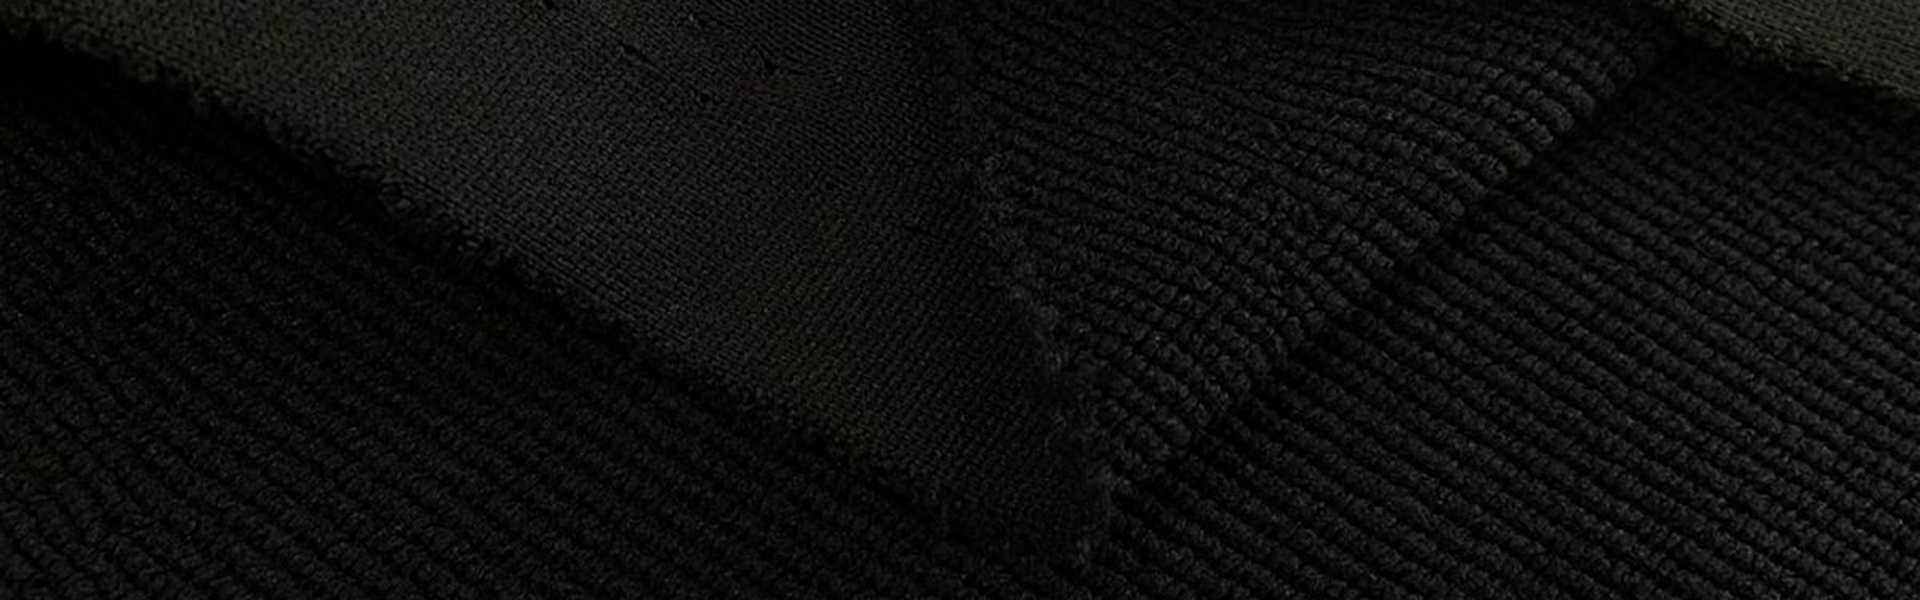  ETC Fabric [material]